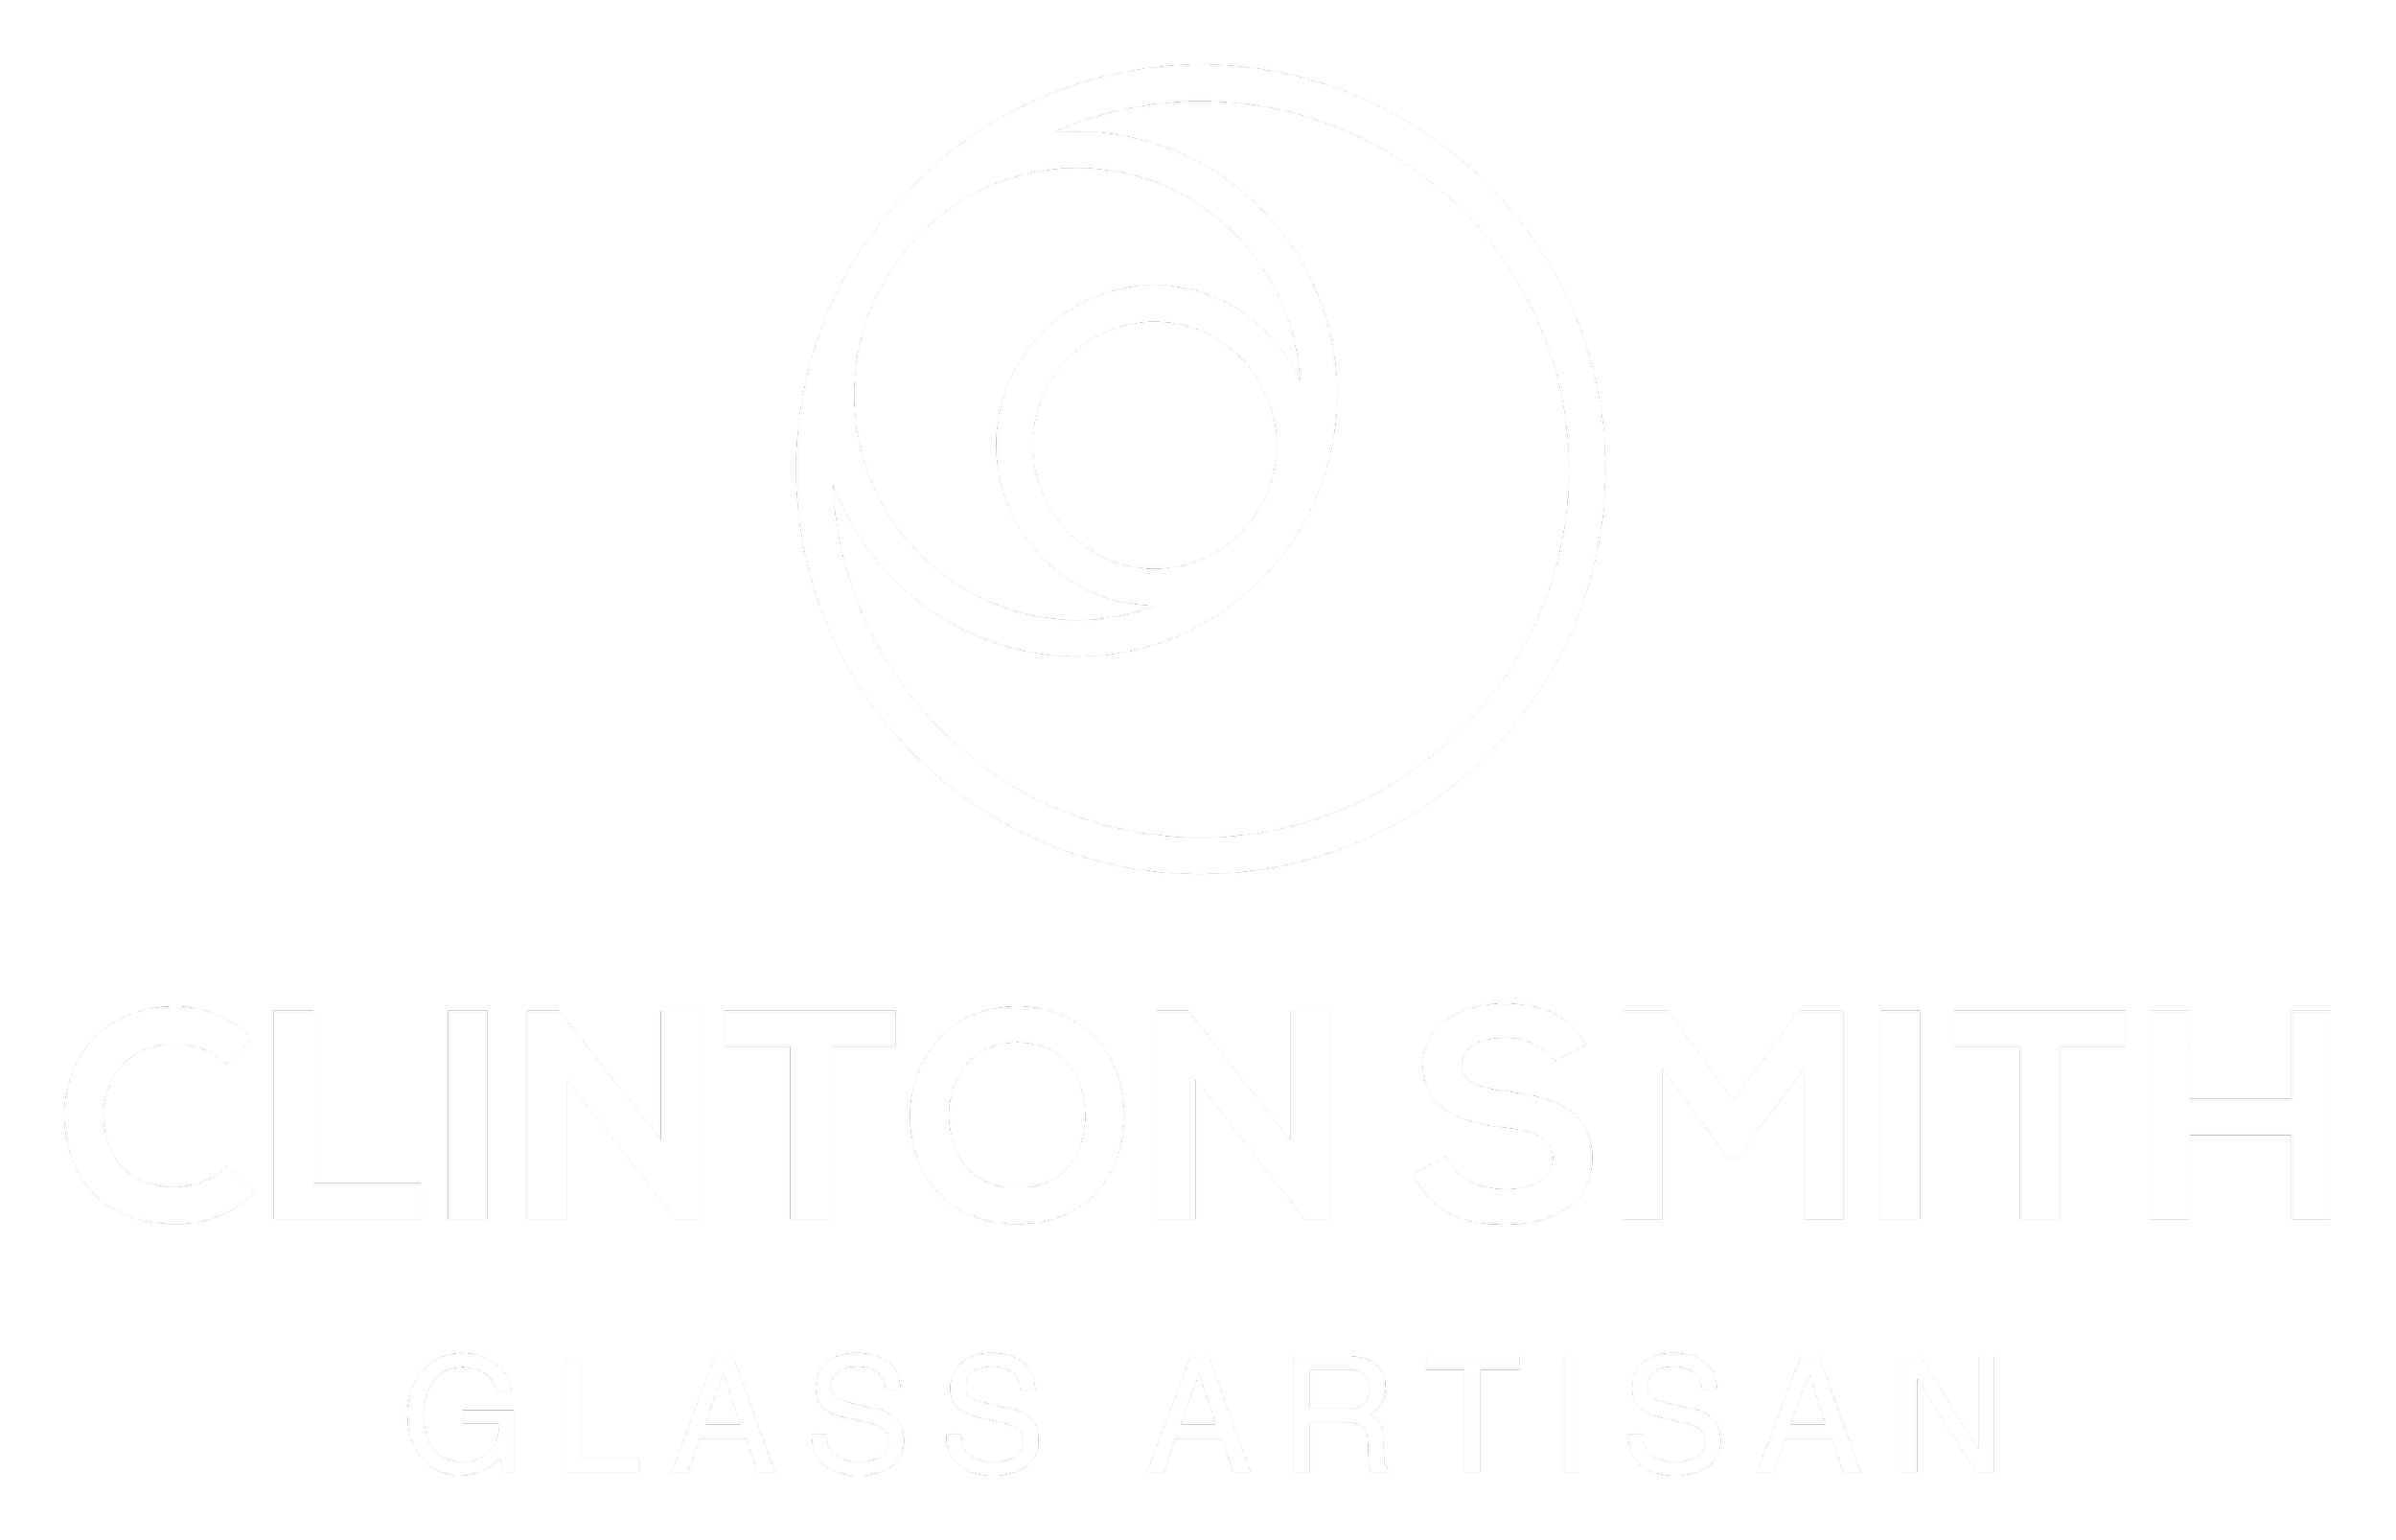 Clinton Smith Glass Artisan